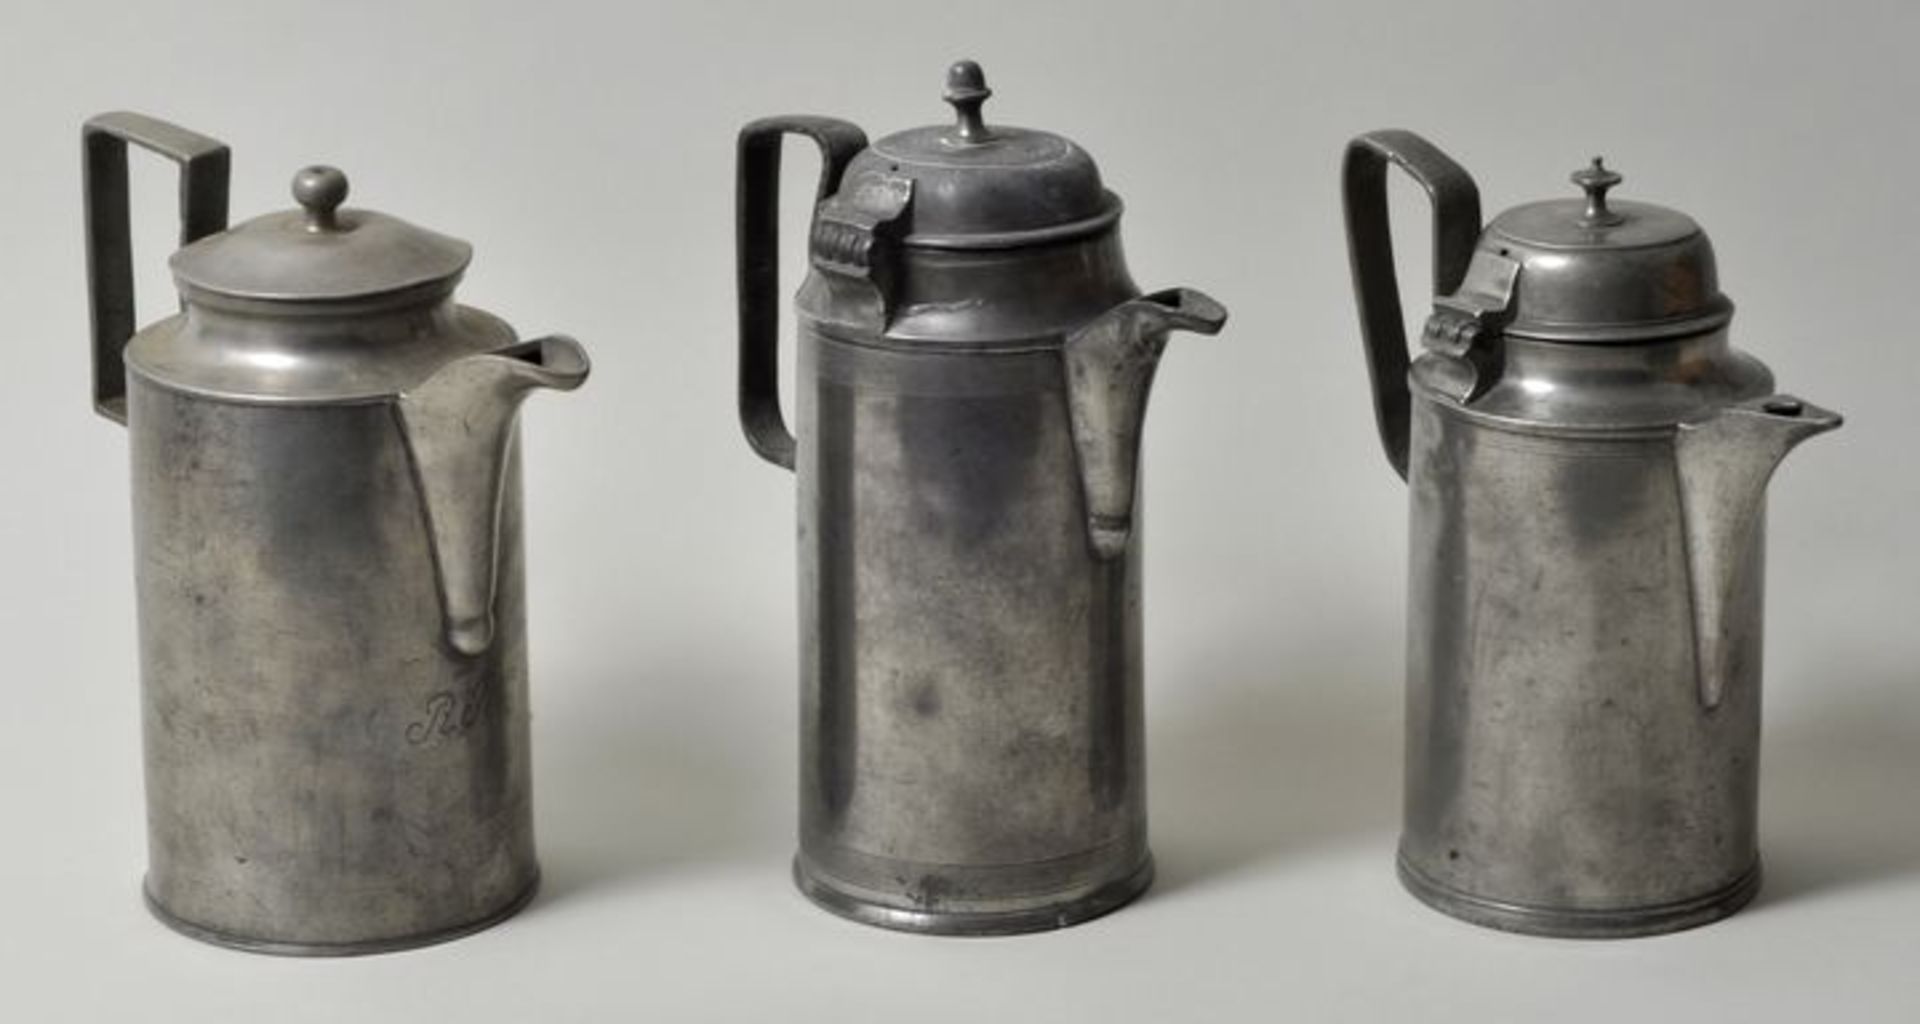 Drei Kaffeekannen, Mitteldeutschland, 19. Jh.Zinn. Zylindrische Korpusform mit eckig gebrochenem